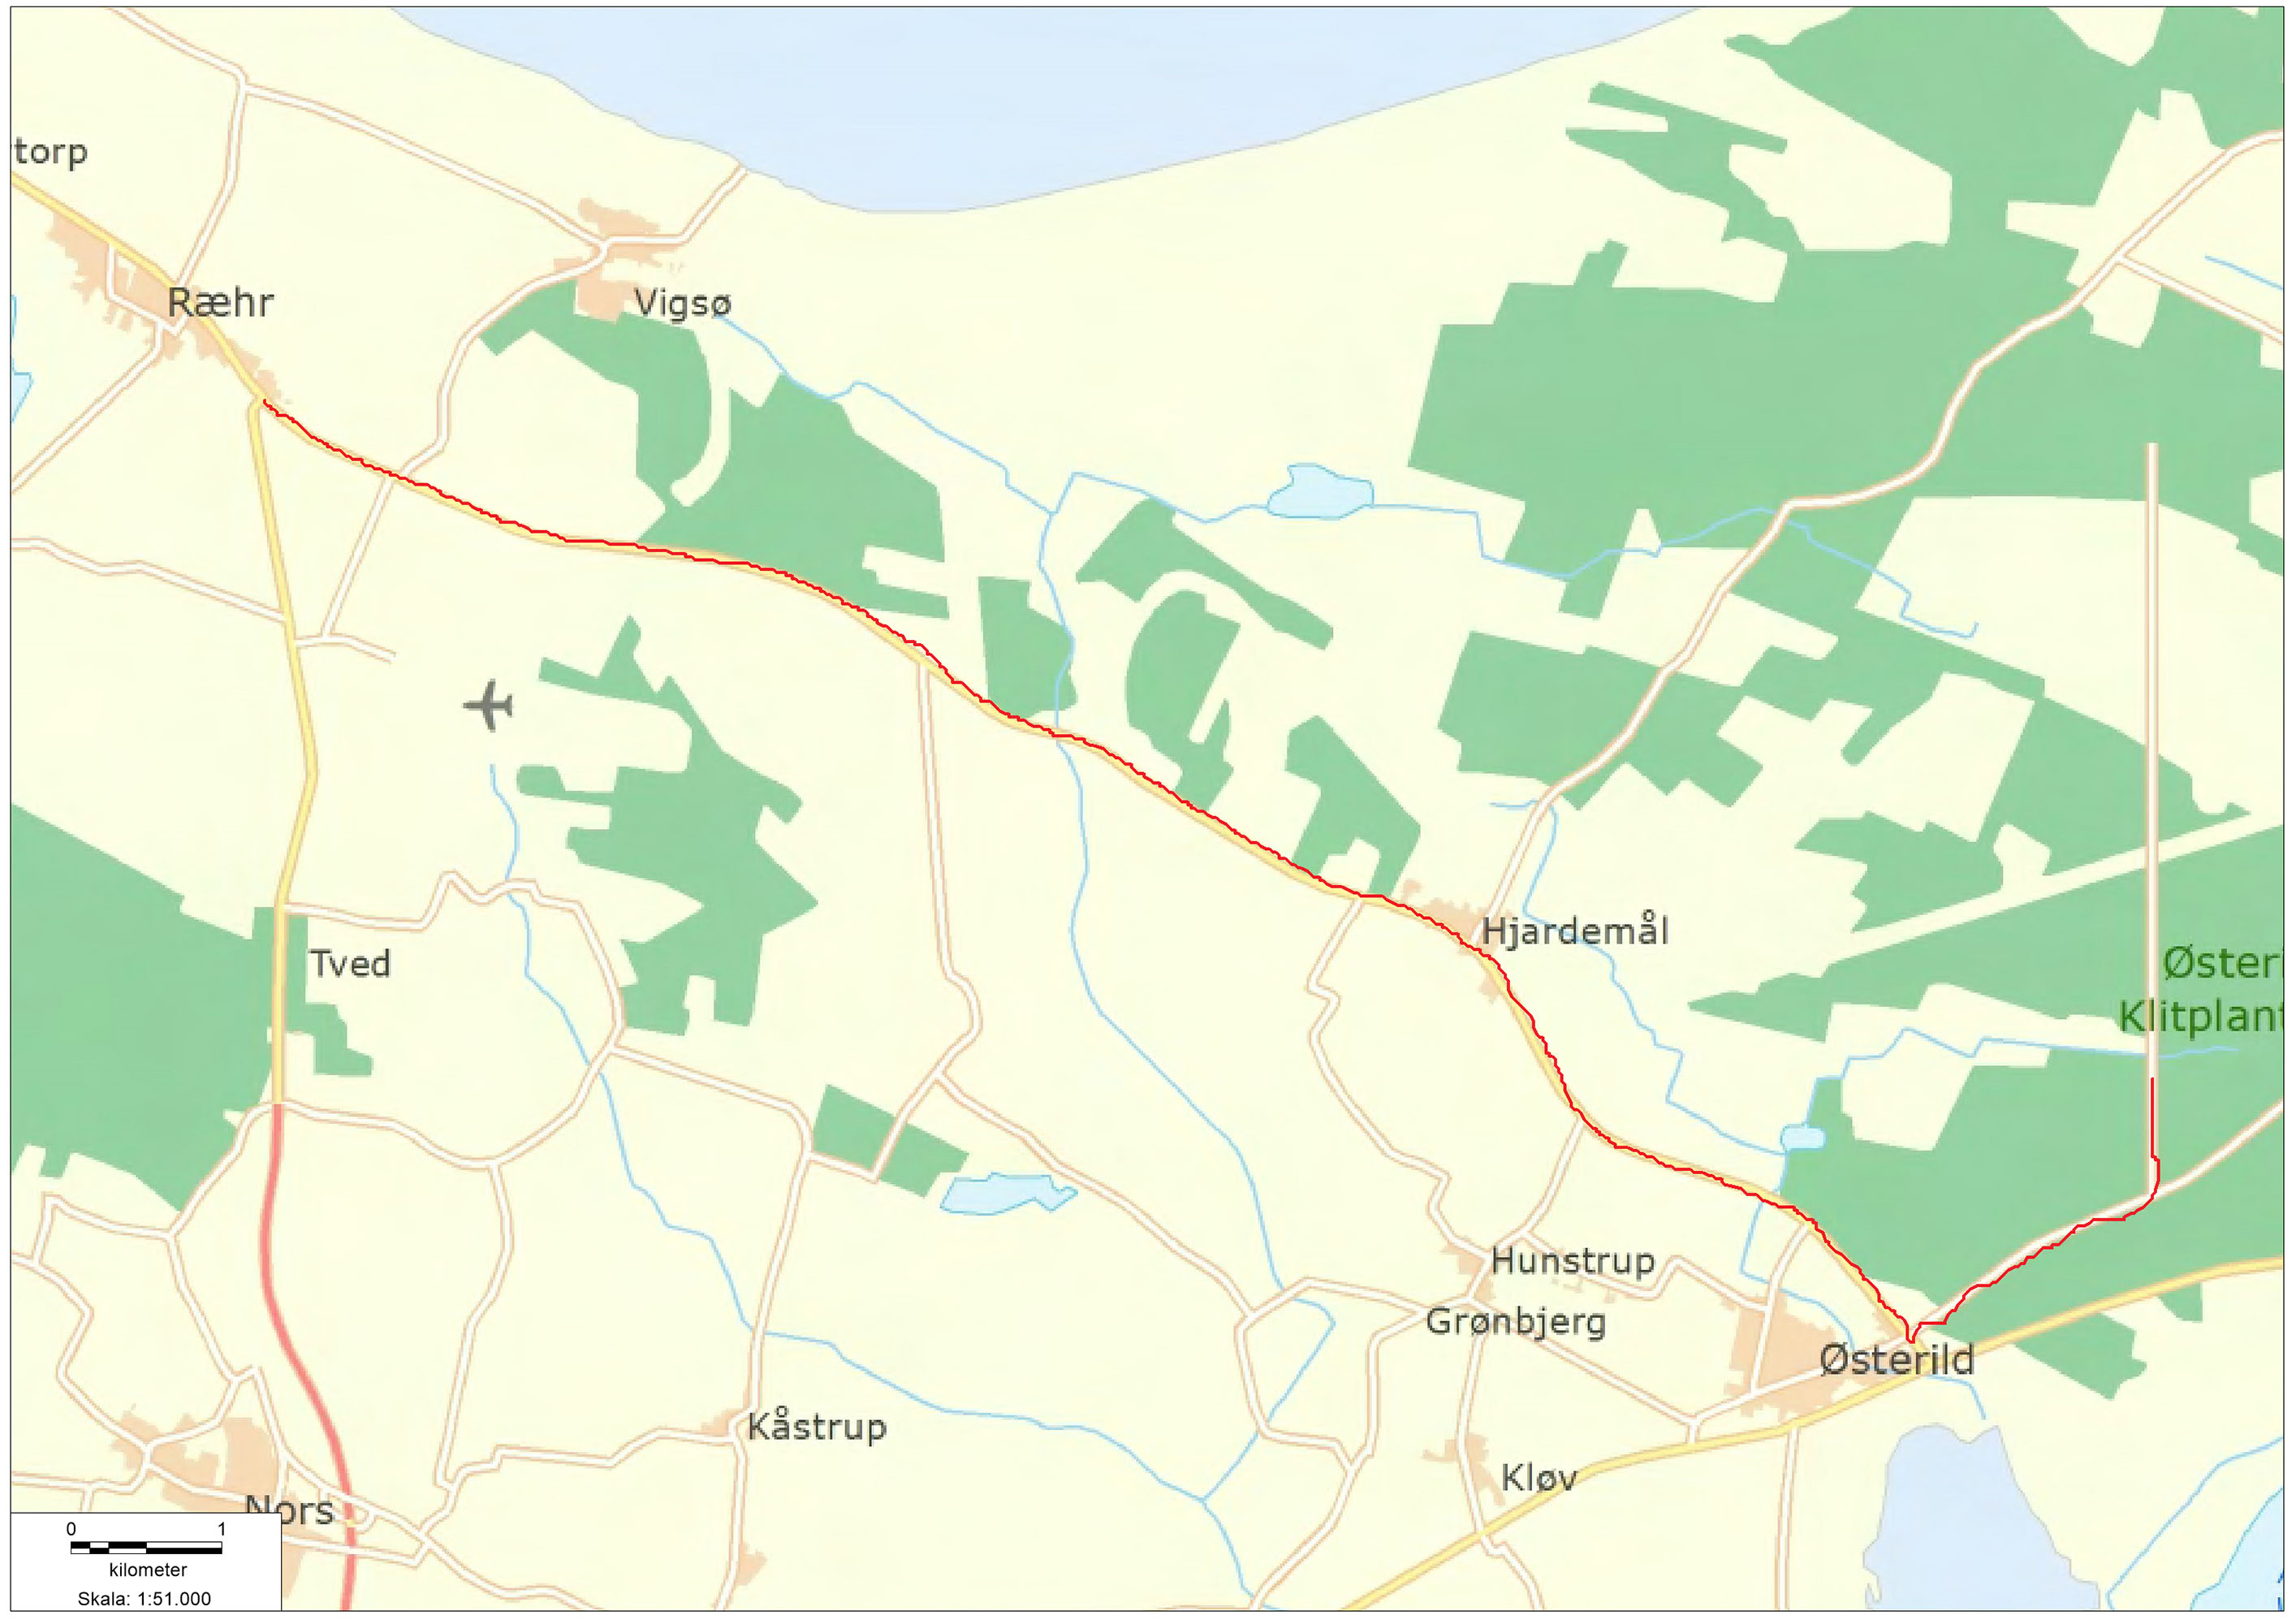 Kort over rute for mølletransport fra Ræhr til Testcenter